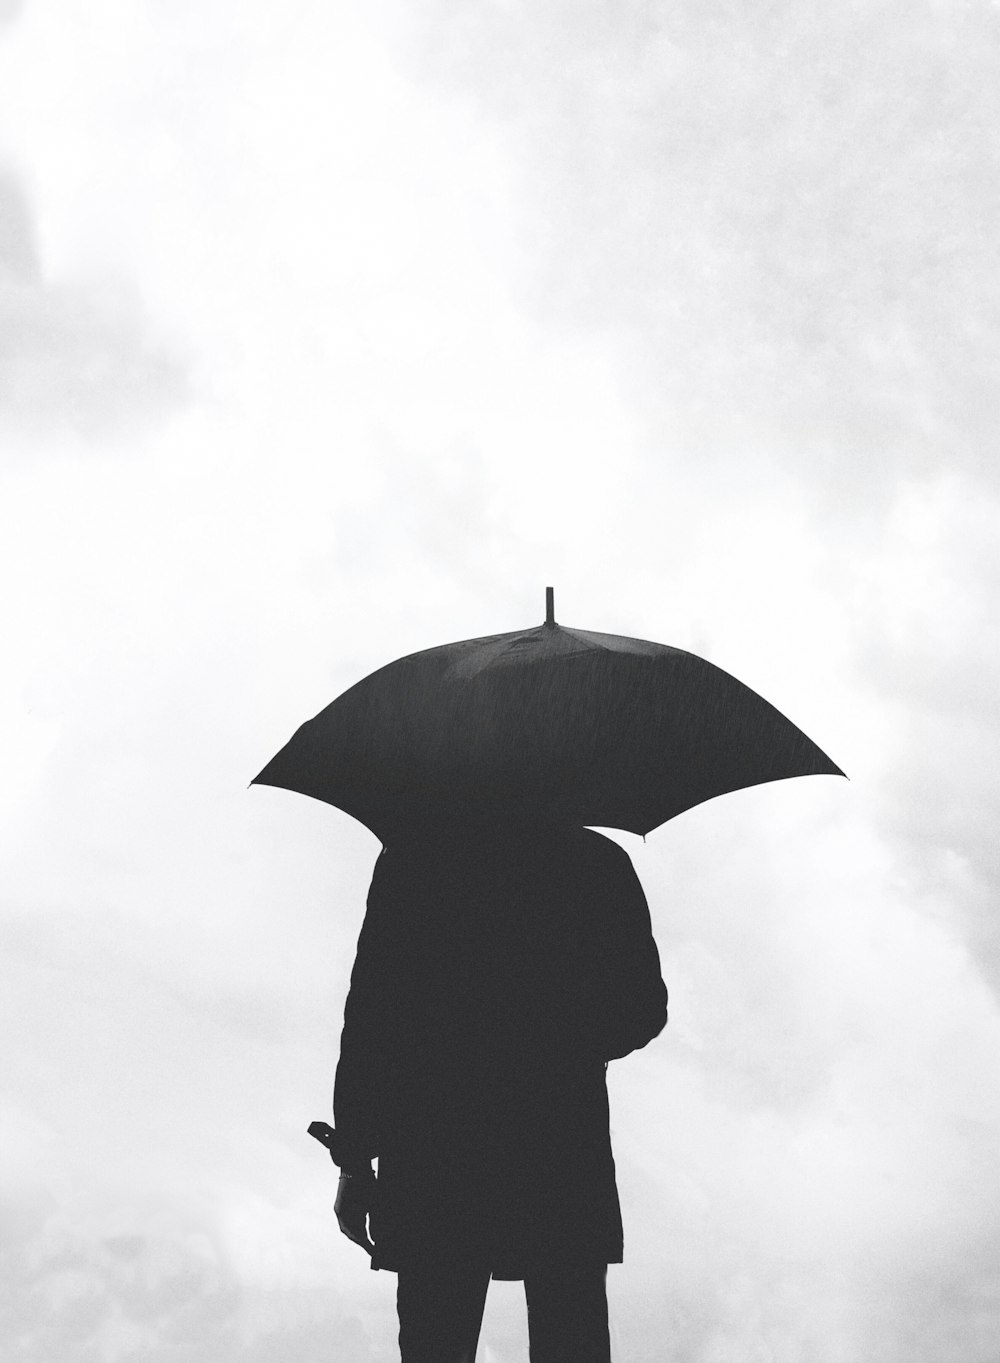 Silueta de la persona bajo el paraguas bajo el cielo nublado